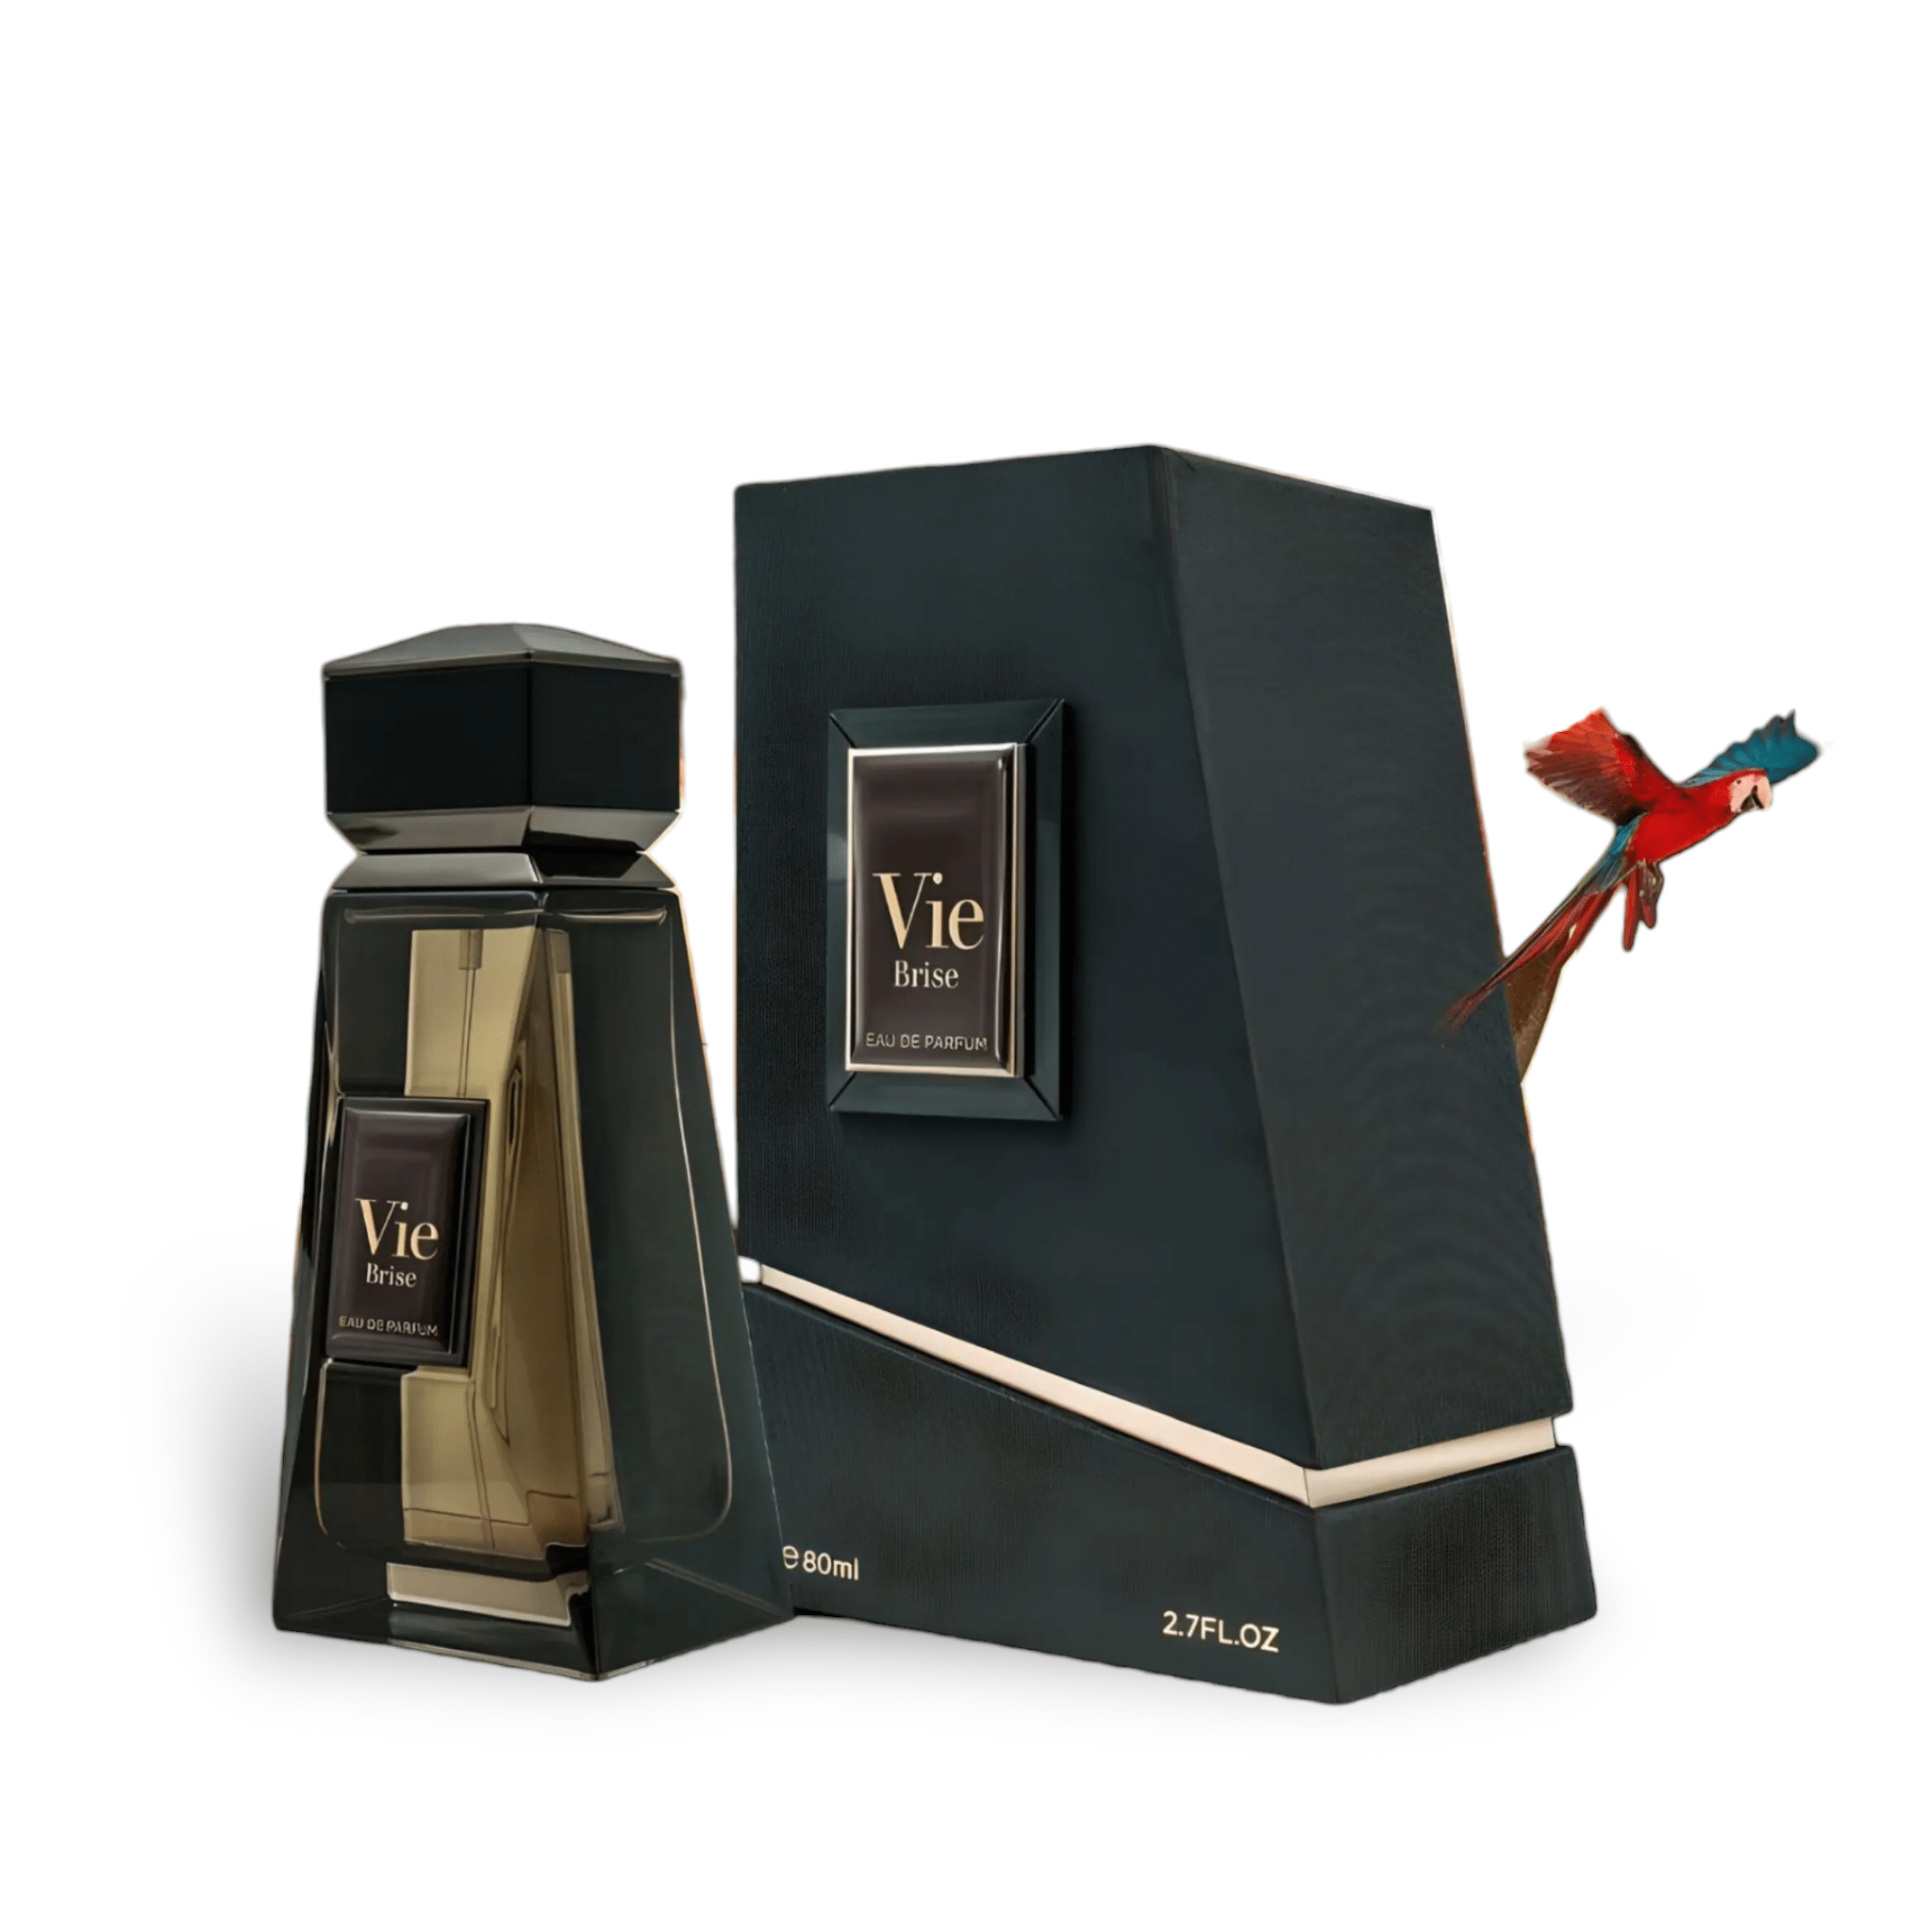 Vie Brise (Elements Of Life) Perfume Eau De Parfum 80Ml By Fa Paris (Fragrance World)